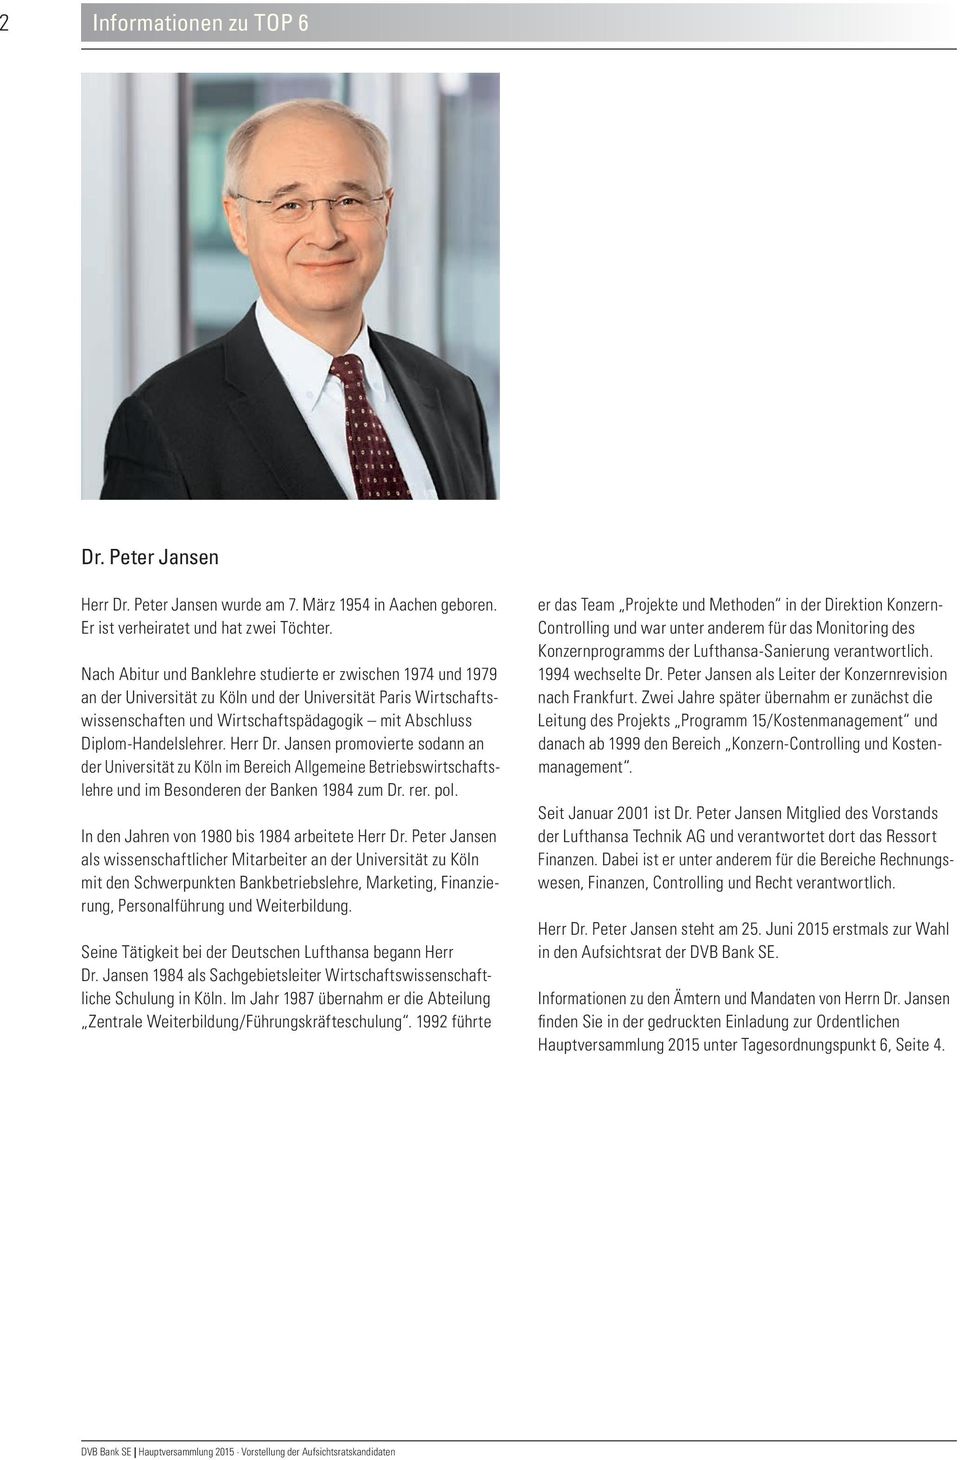 Diplom-Handelslehrer. Herr Dr. Jansen promovierte sodann an der Universität zu Köln im Bereich Allgemeine Betriebswirtschaftslehre und im Besonderen der Banken 1984 zum Dr. rer. pol.